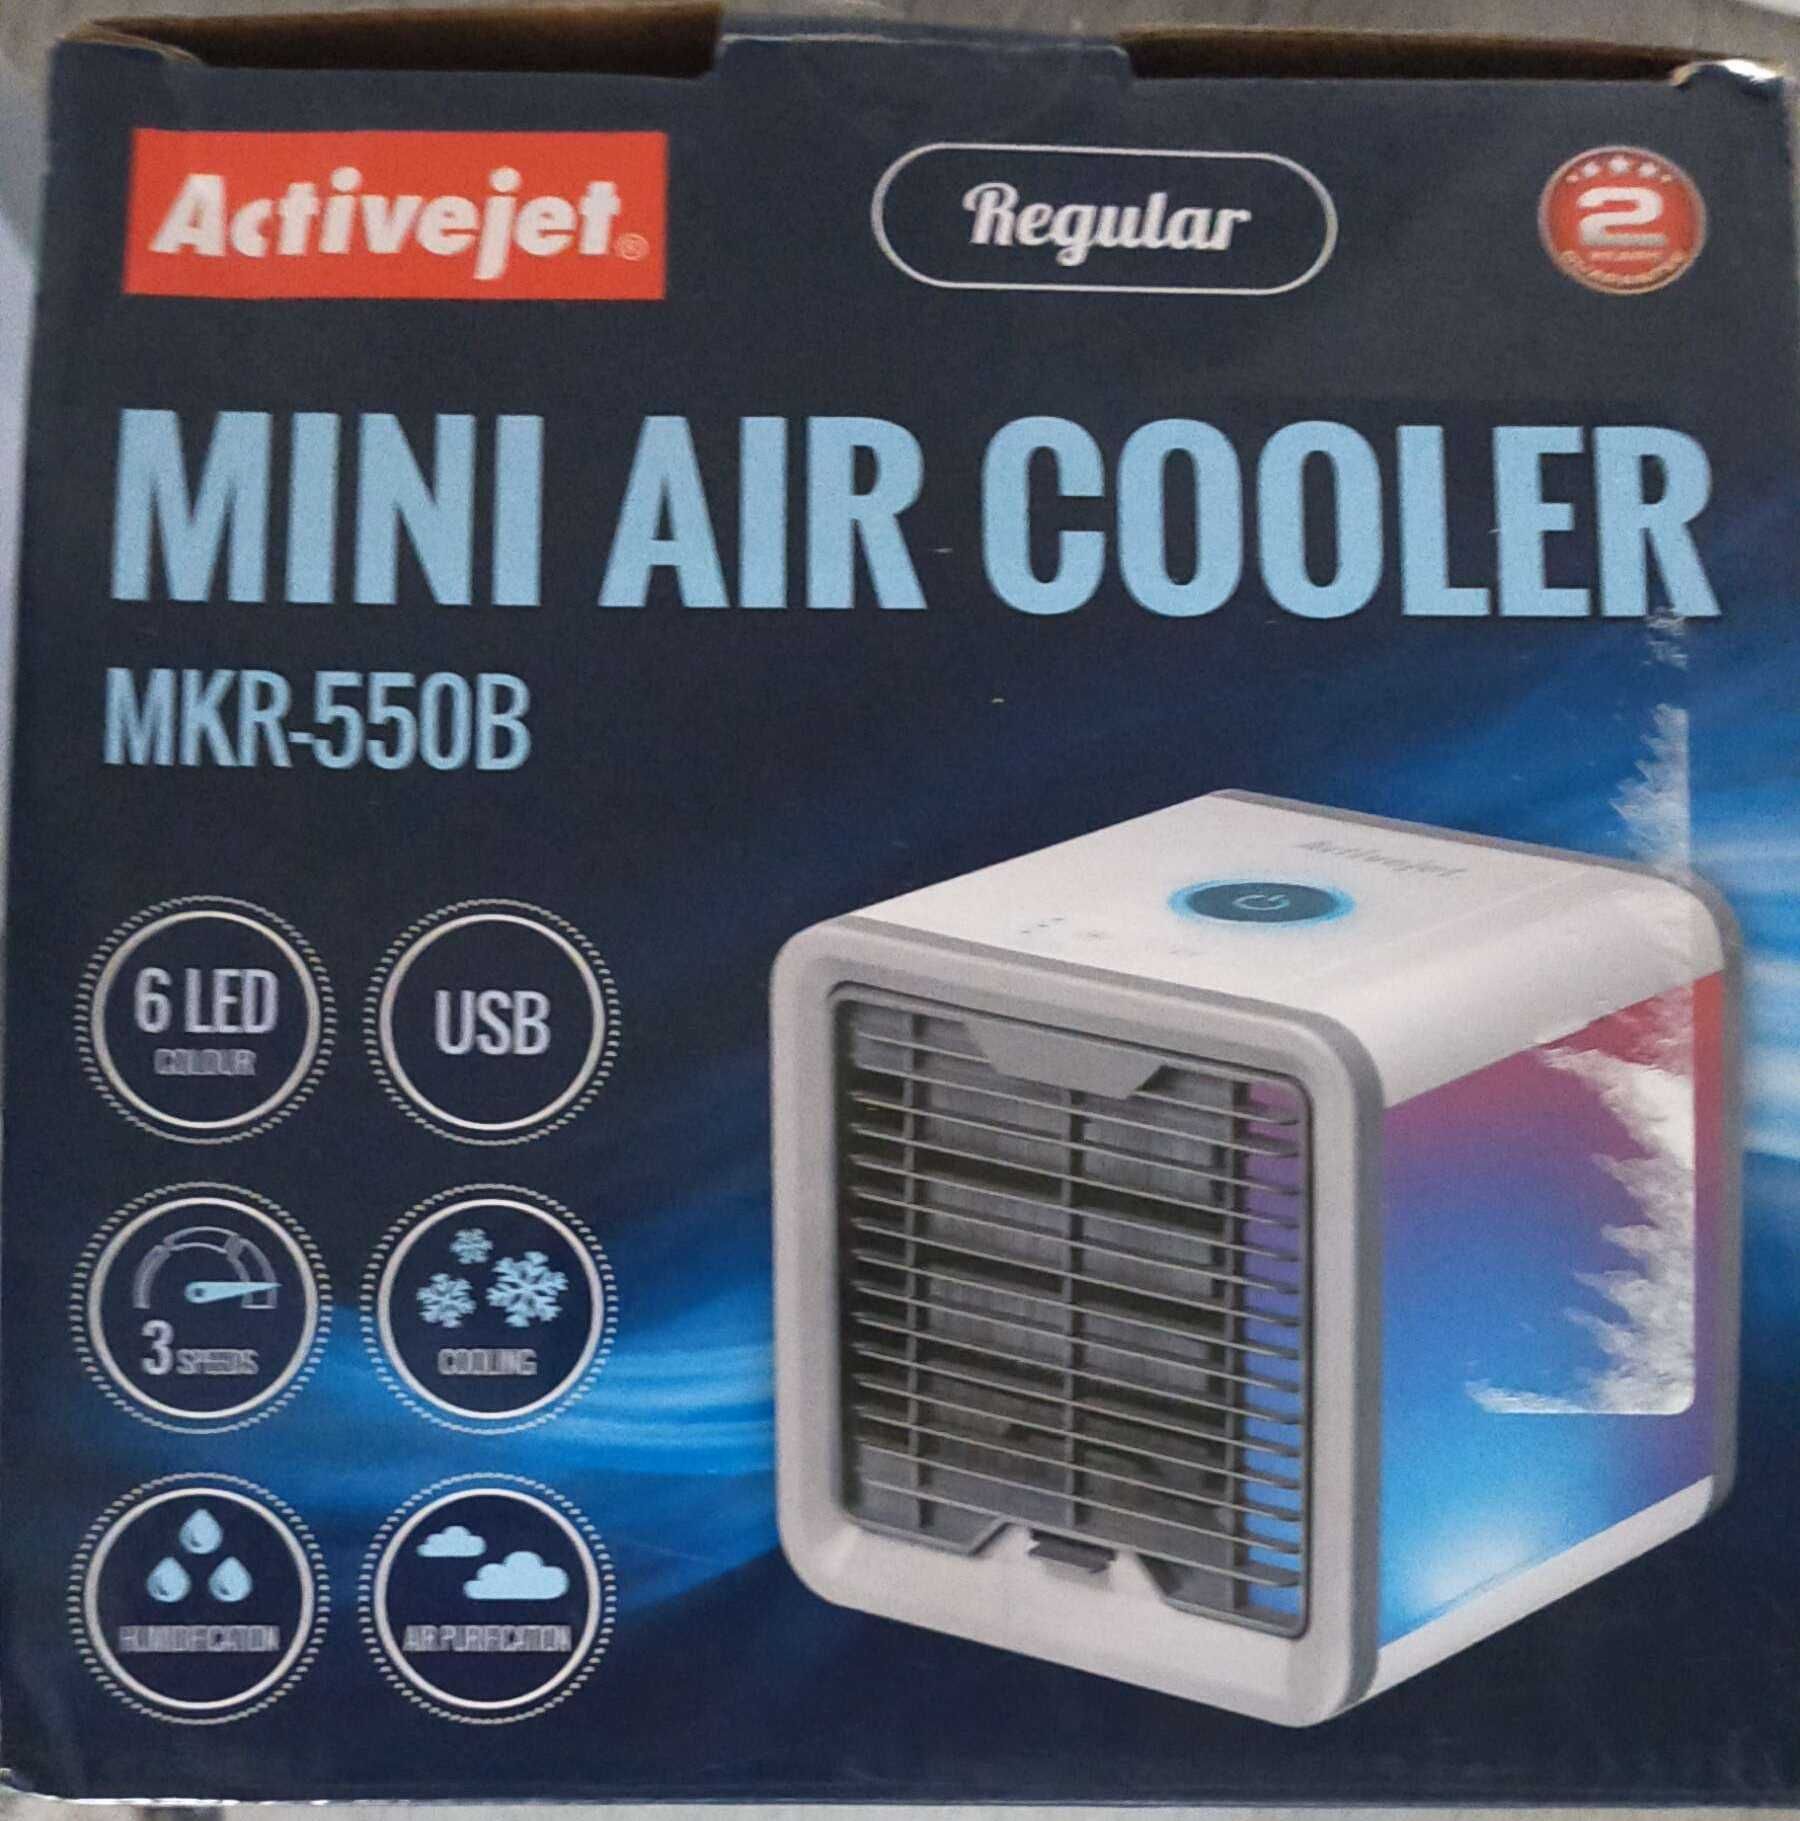 Klimator ACTIVEJET Regular MKR-550B